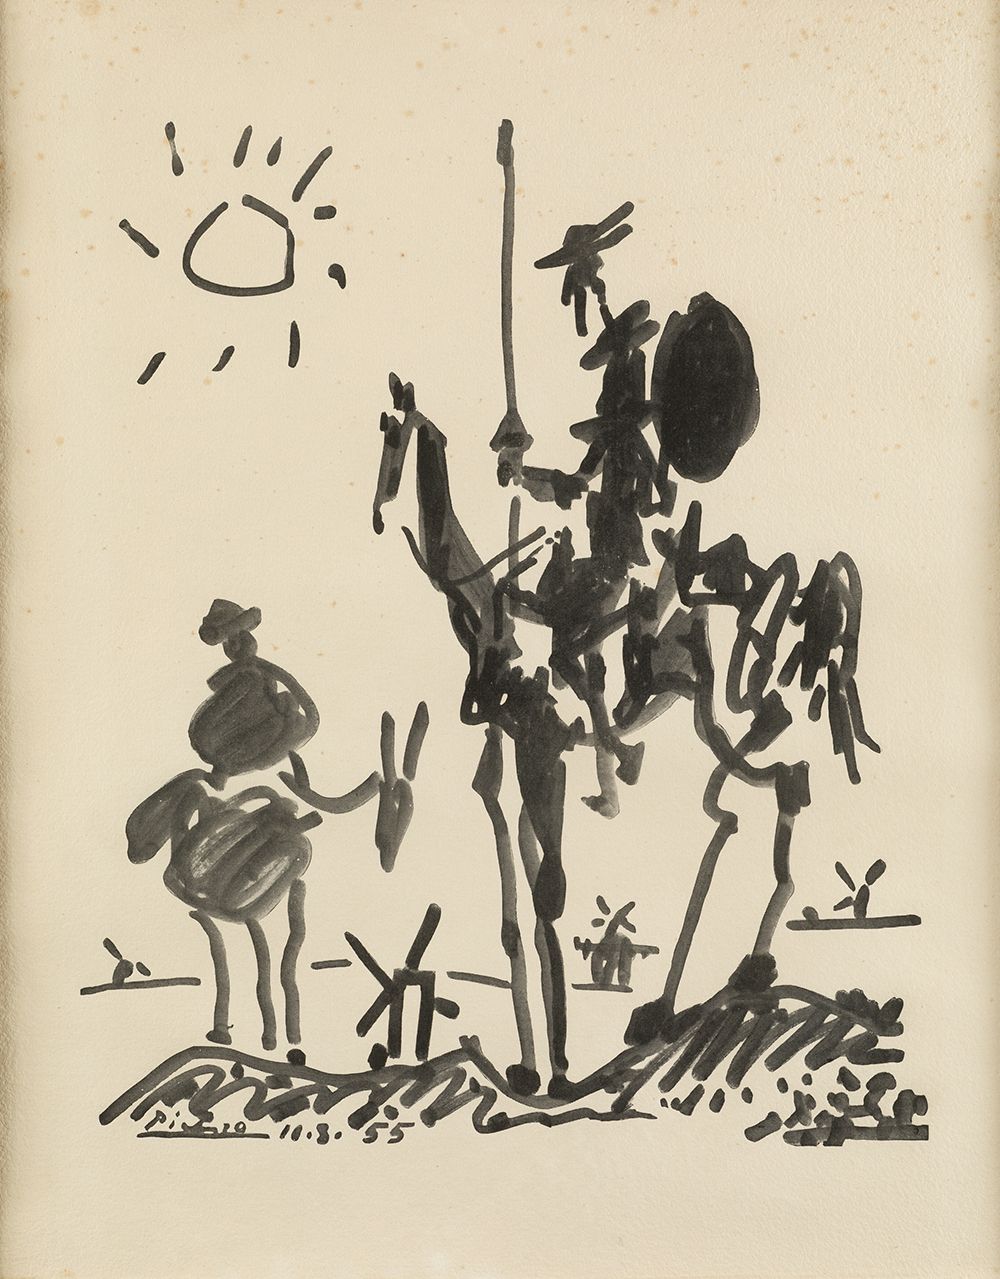 PABLO RUIZ PICASSO (1881 / 1973) "Don Quixote and Sancho" 11.8.55版上有签名和日期 根据毕加索为&hellip;